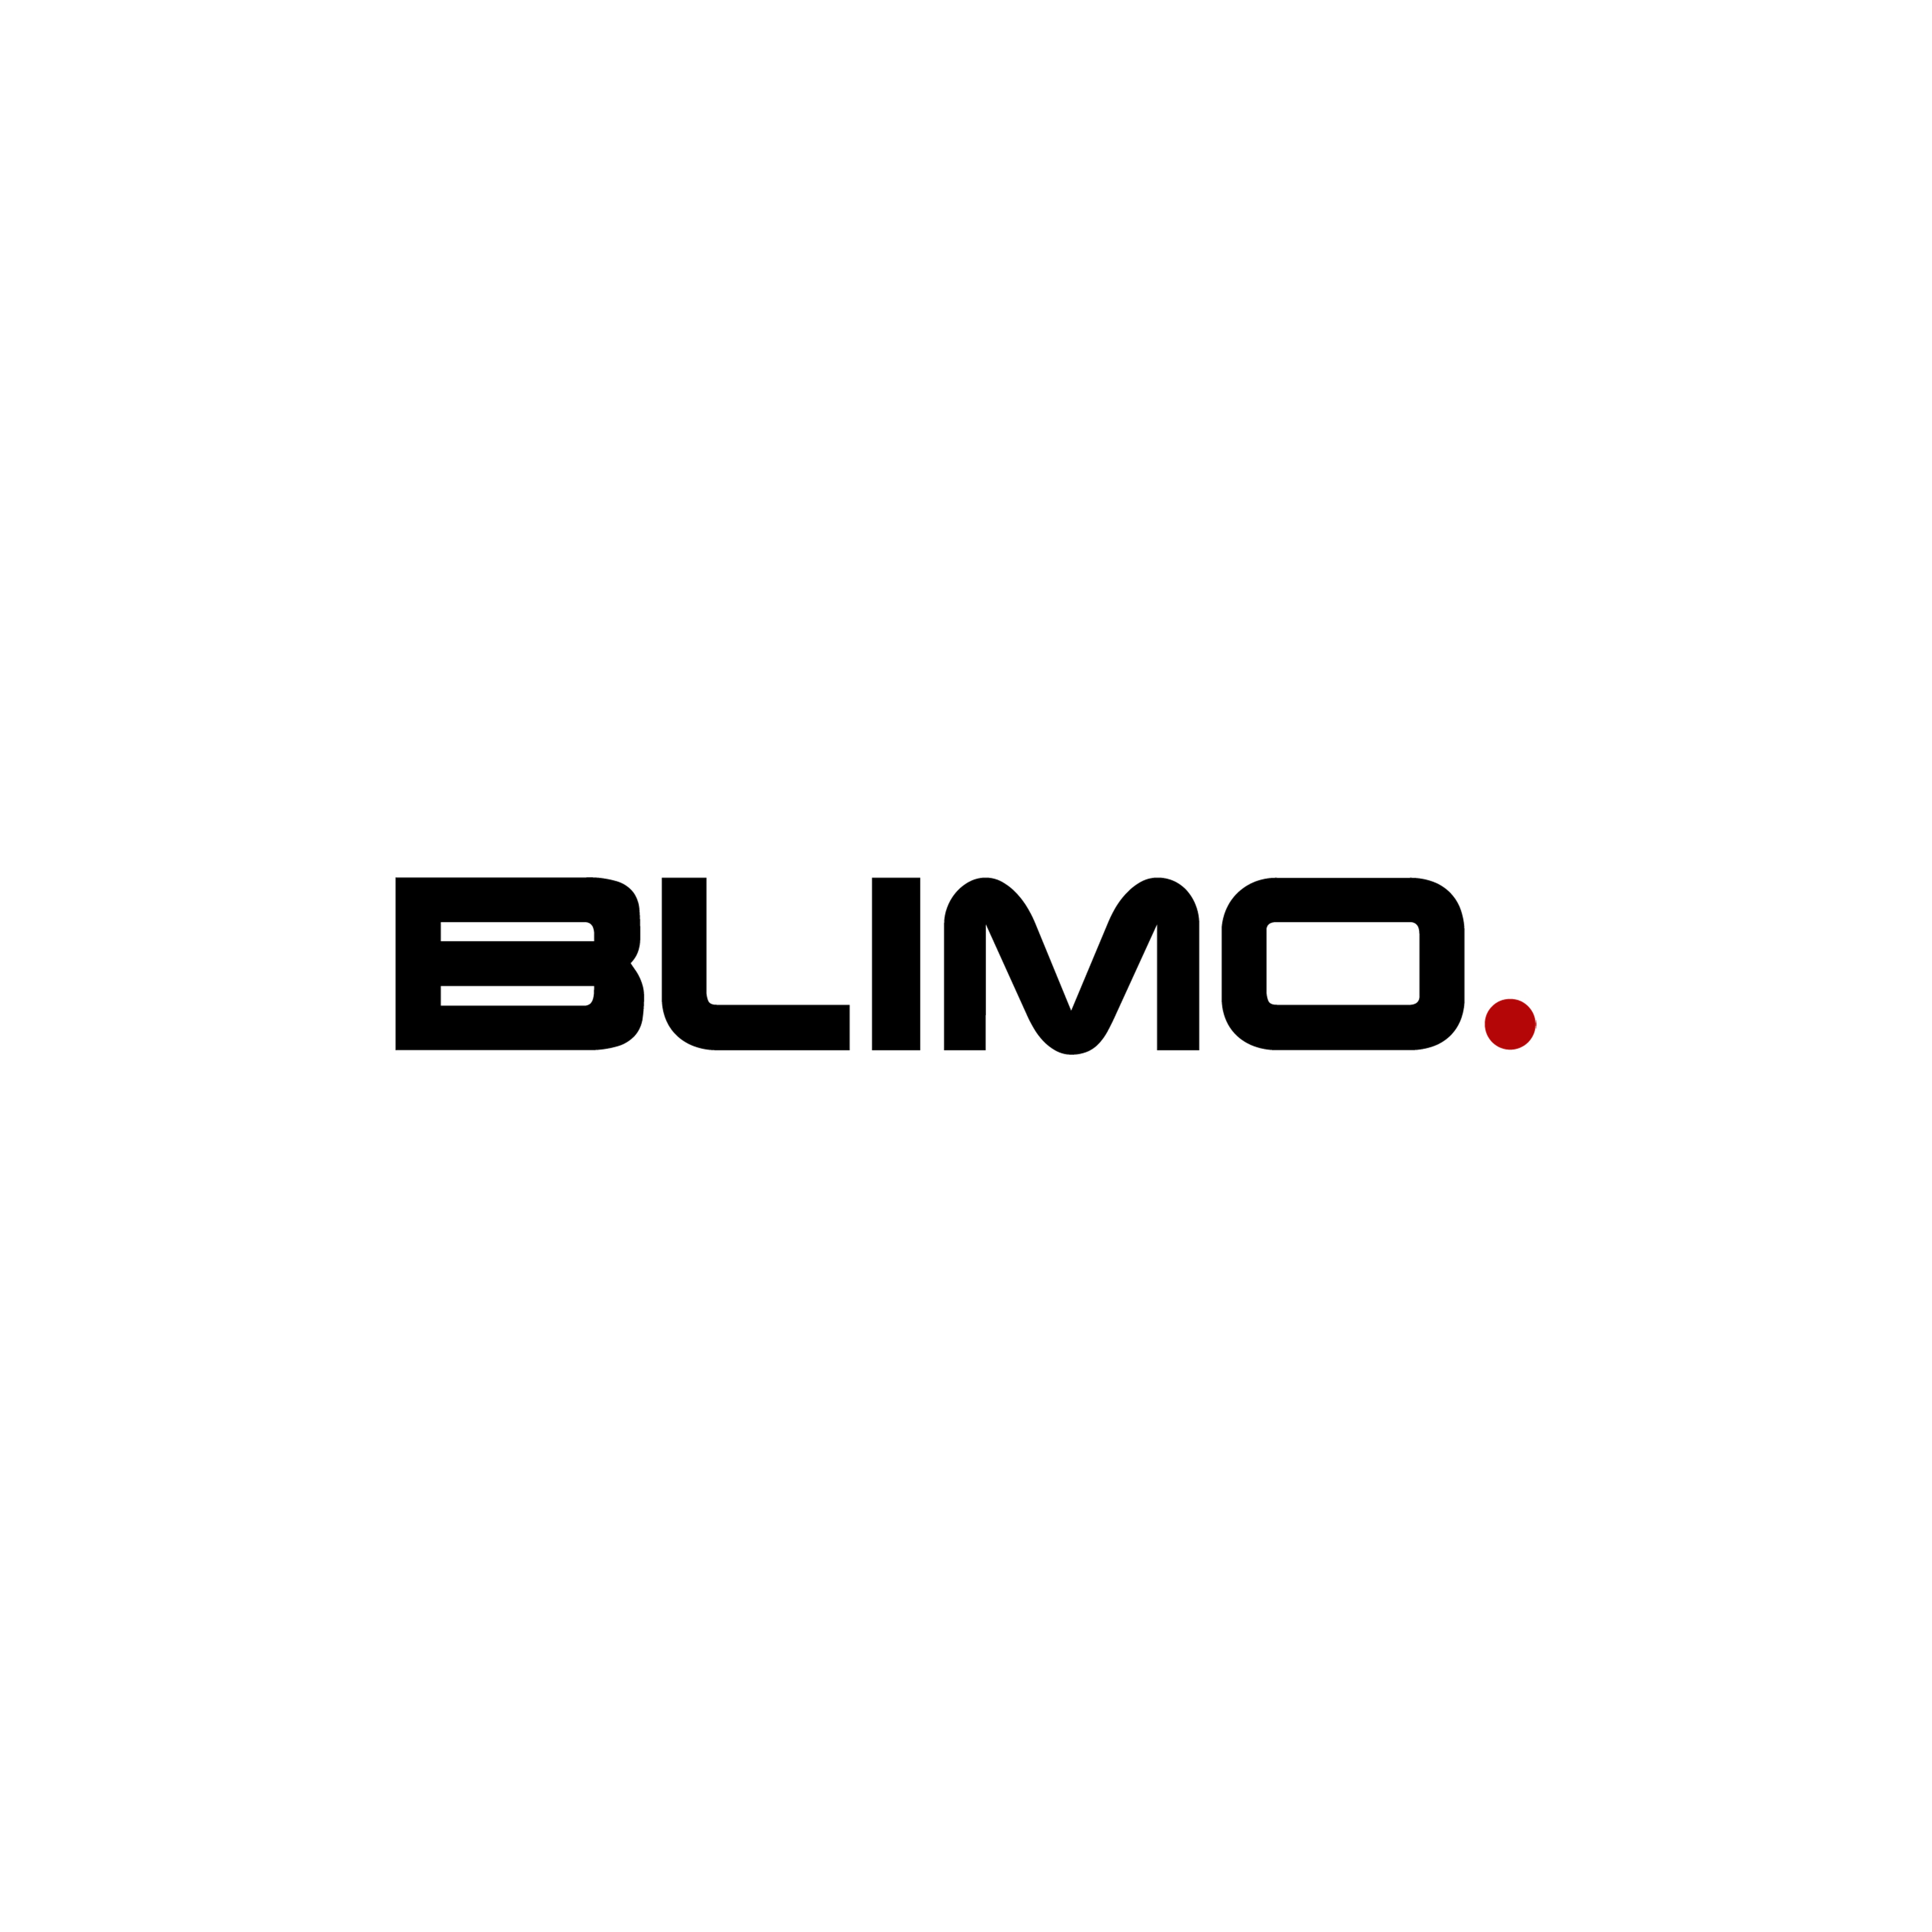 Blinkersglas BAK Blimo Moto/Moto Sport - Vänster MP107